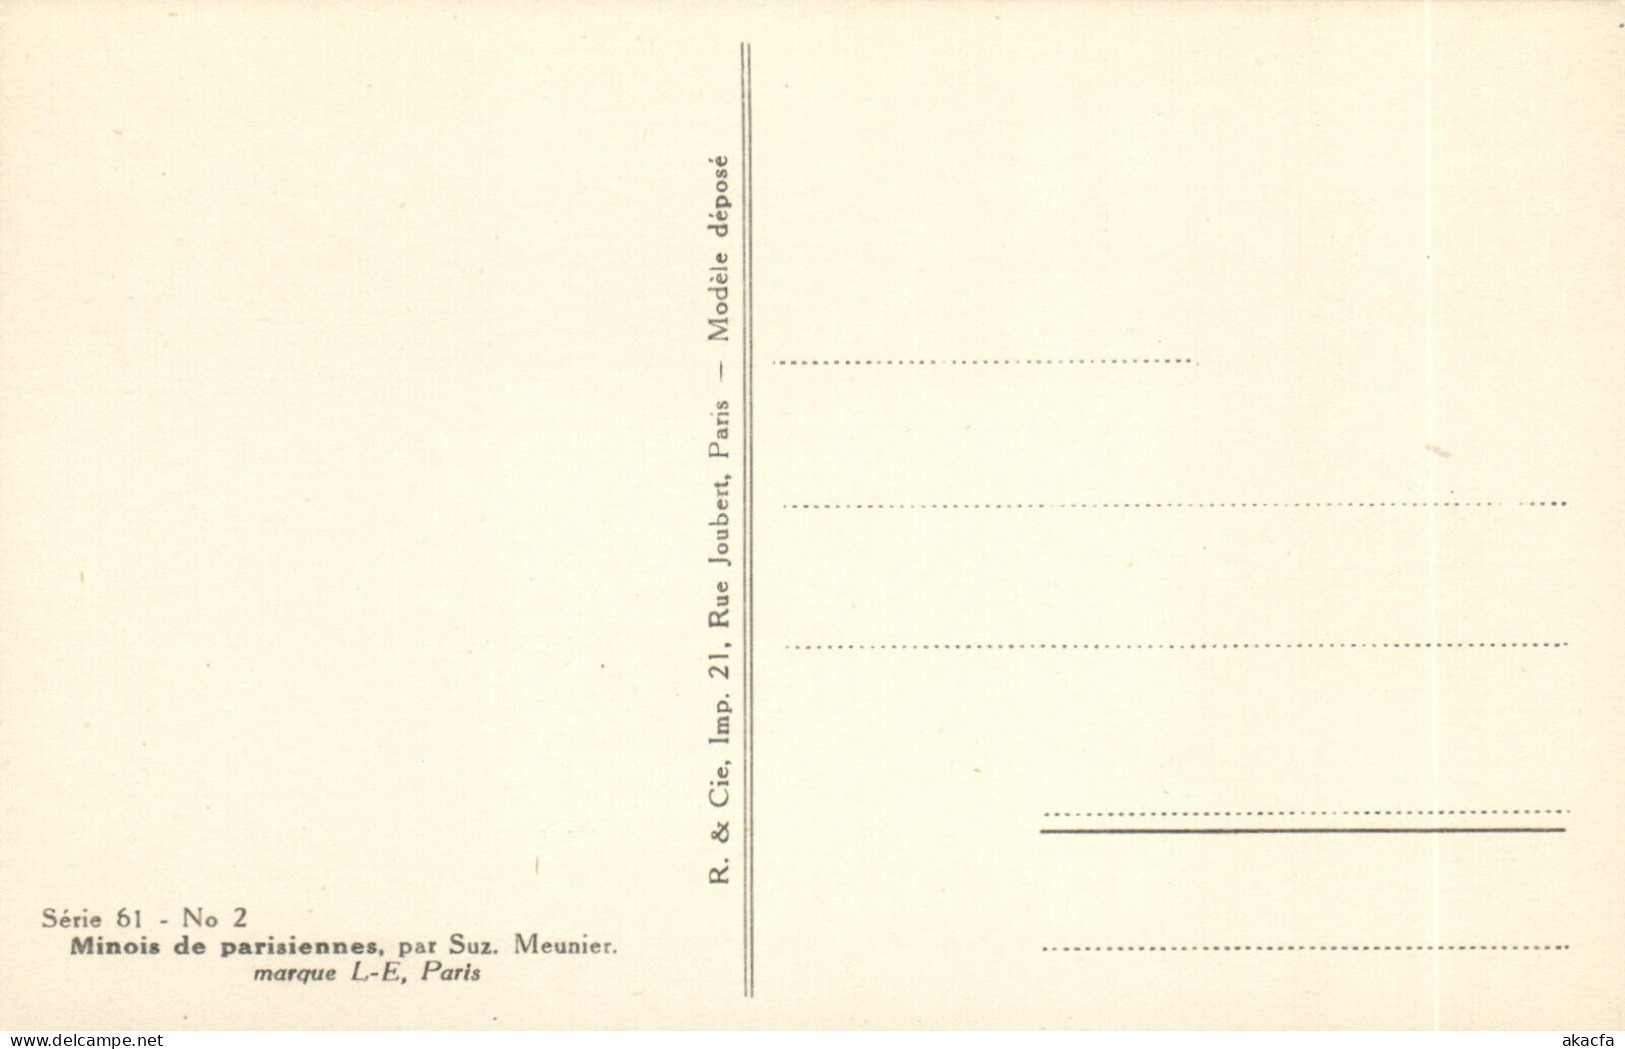 PC ARTIST SIGNED, MEUNIER, RISQUE, MINOIS PARISIENNES, Vintage Postcard (b50654) - Meunier, S.